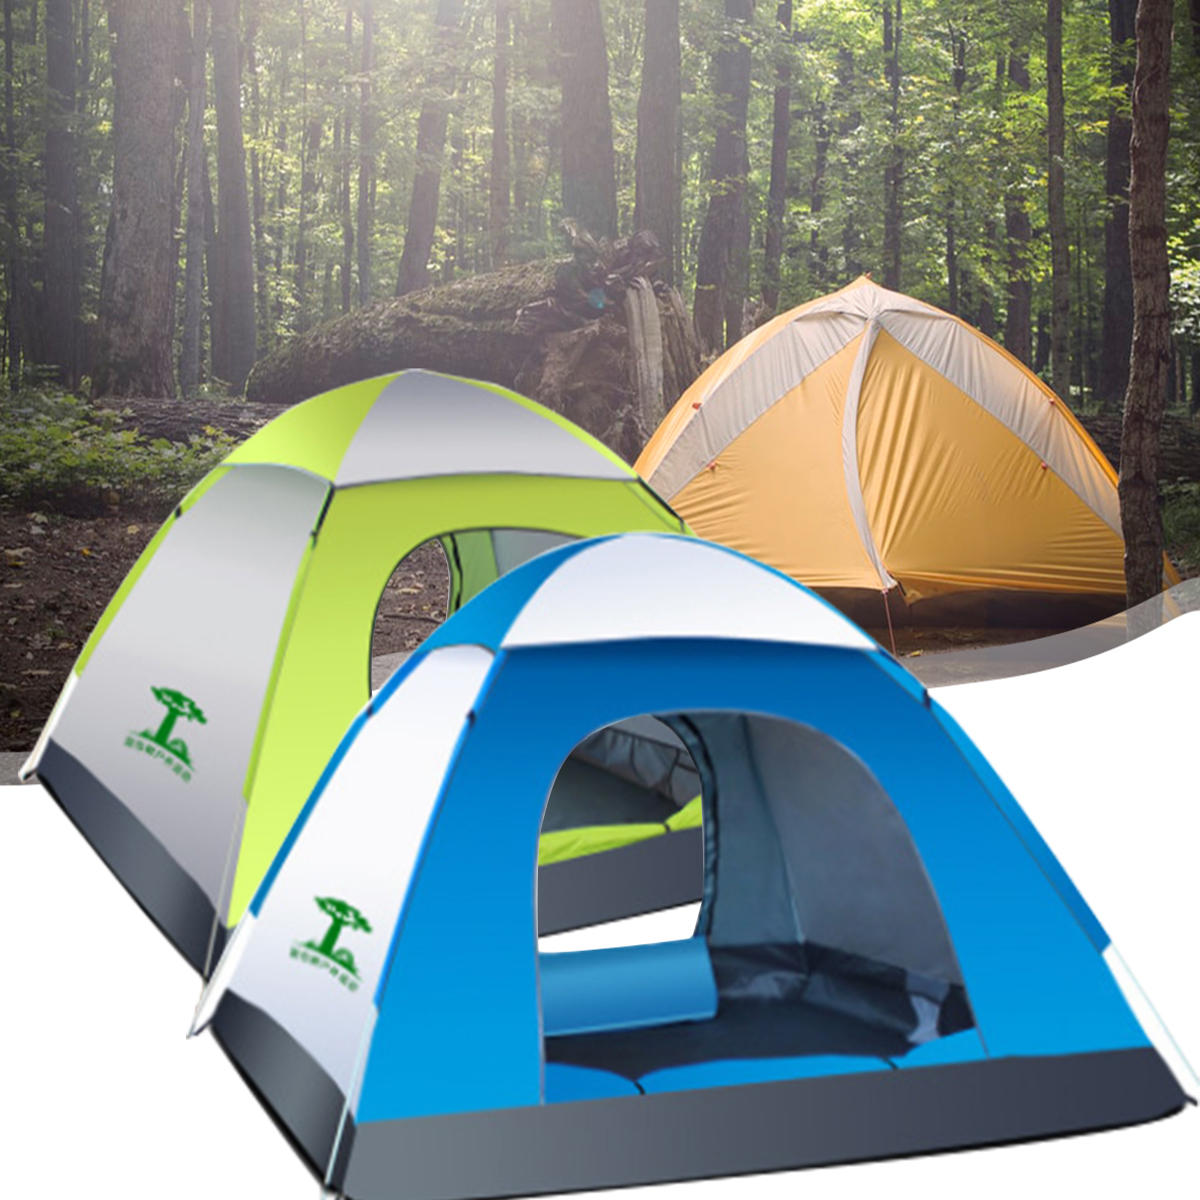 Tenda automatica impermeabile per 3-4 persone per campeggio all'aperto, in tessuto Oxford 210D, tenda da spiaggia da viaggio.